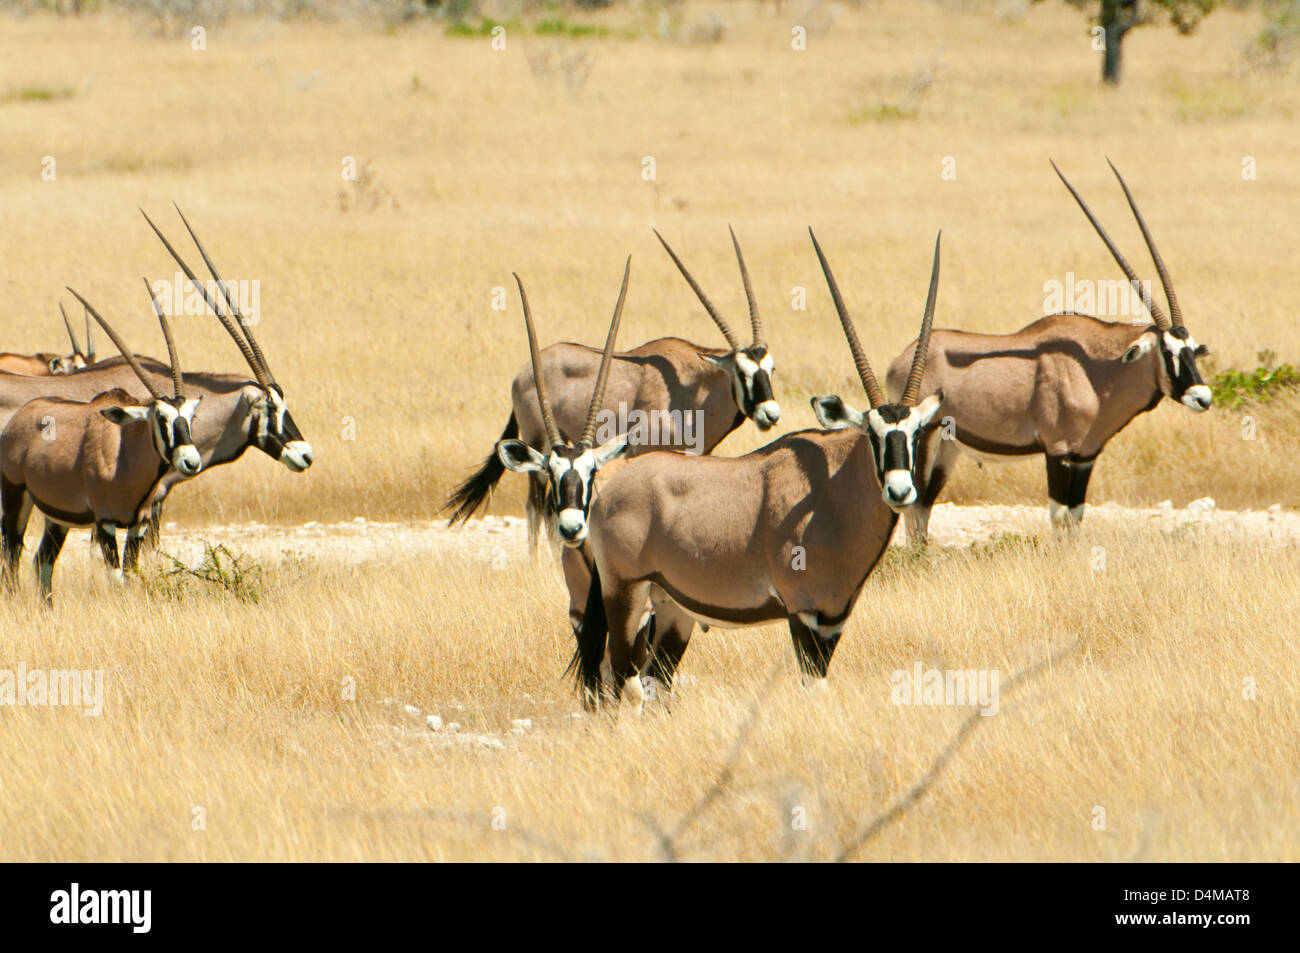 Group of Oryx in Etosha National Park, Namibia Stock Photo